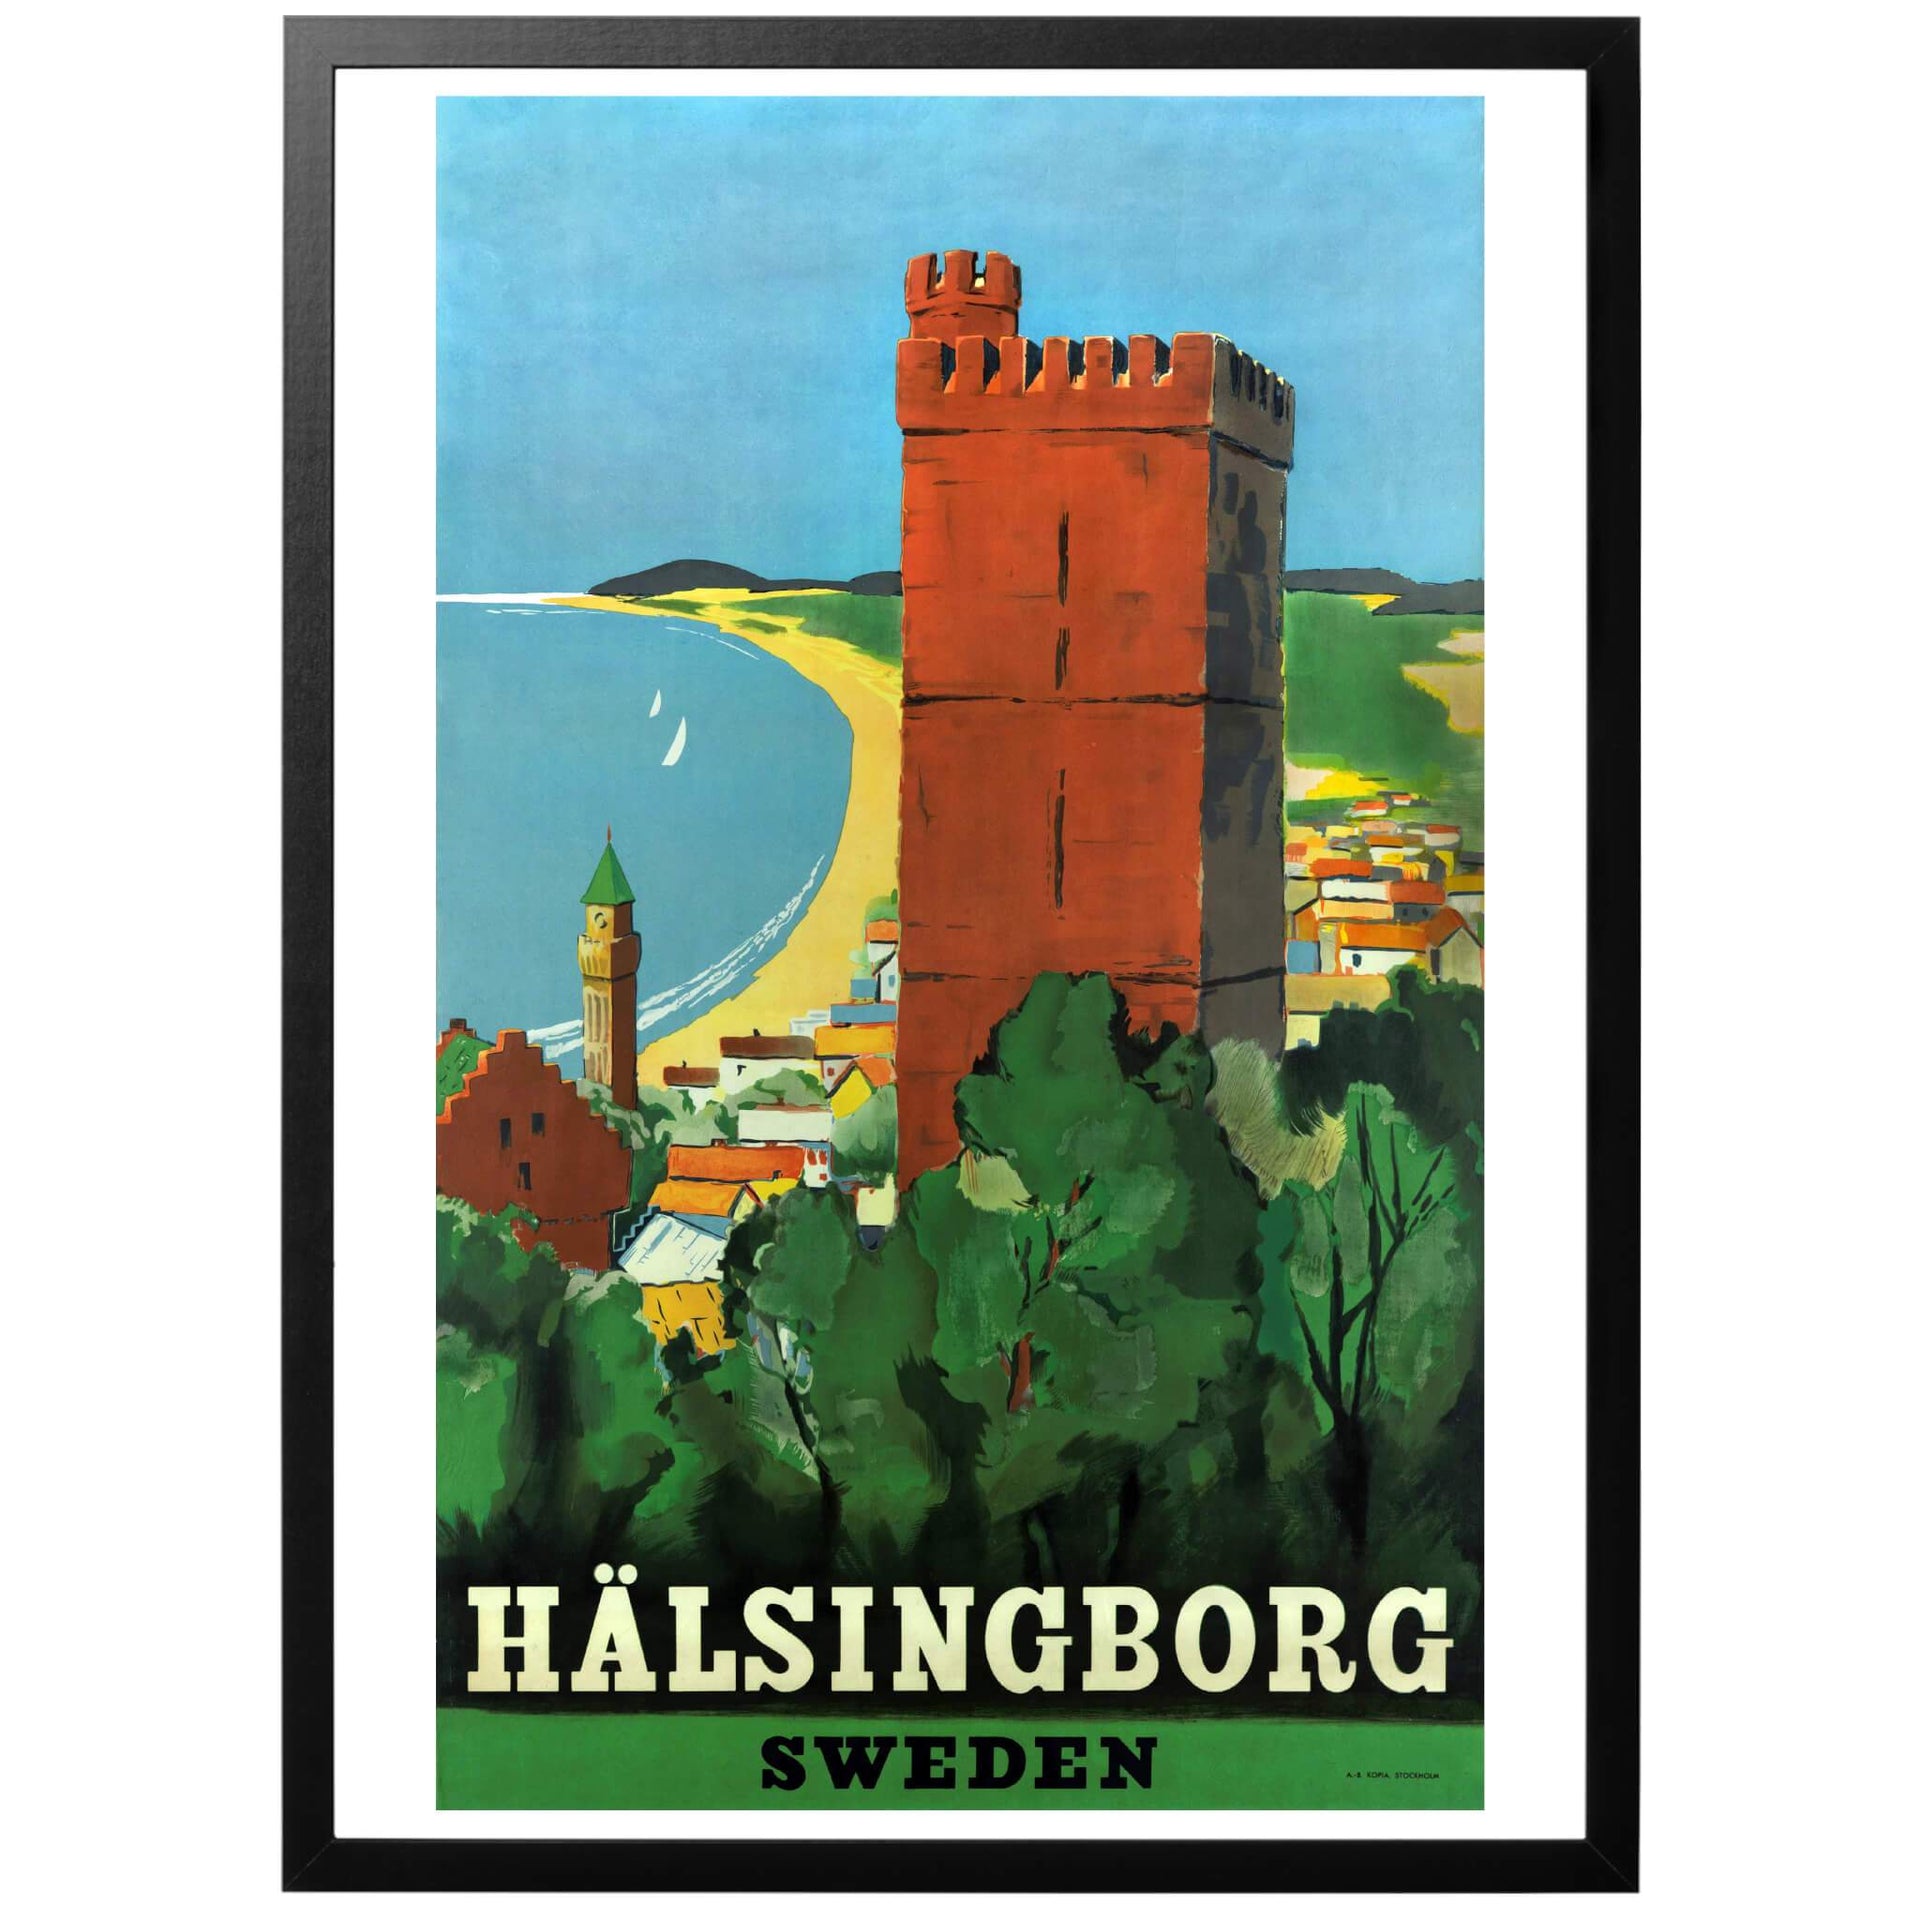 Hälsingborg - Sweden Svensk reseaffisch från 1930-talet. Vacker reseposter för Helsingborg, med den gamla stavningen. Köp den hos oss!